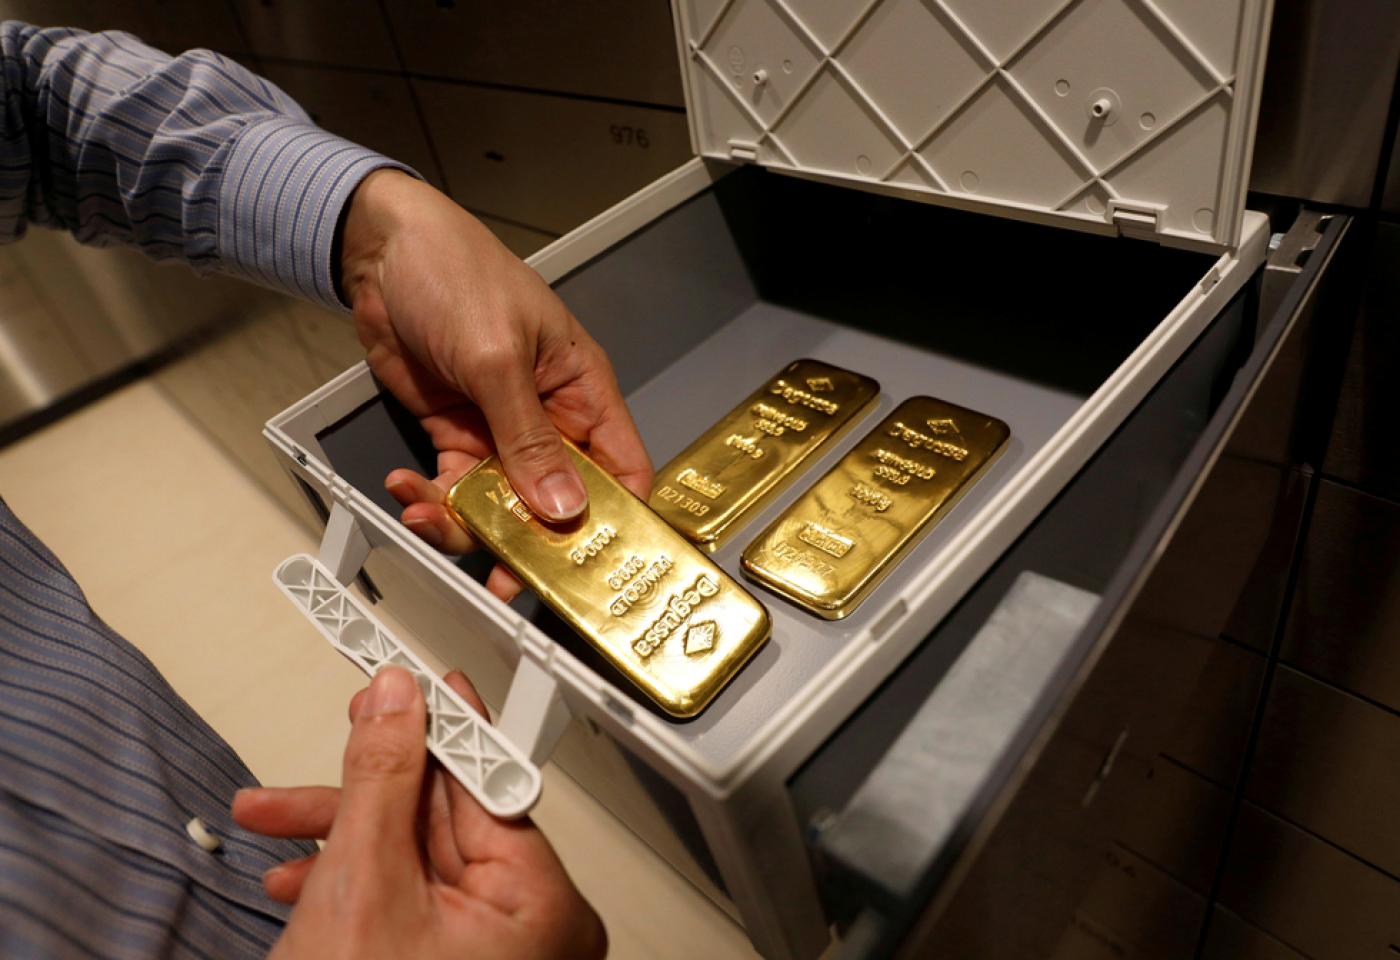 Прогноз цен на золото в 2021 году в России